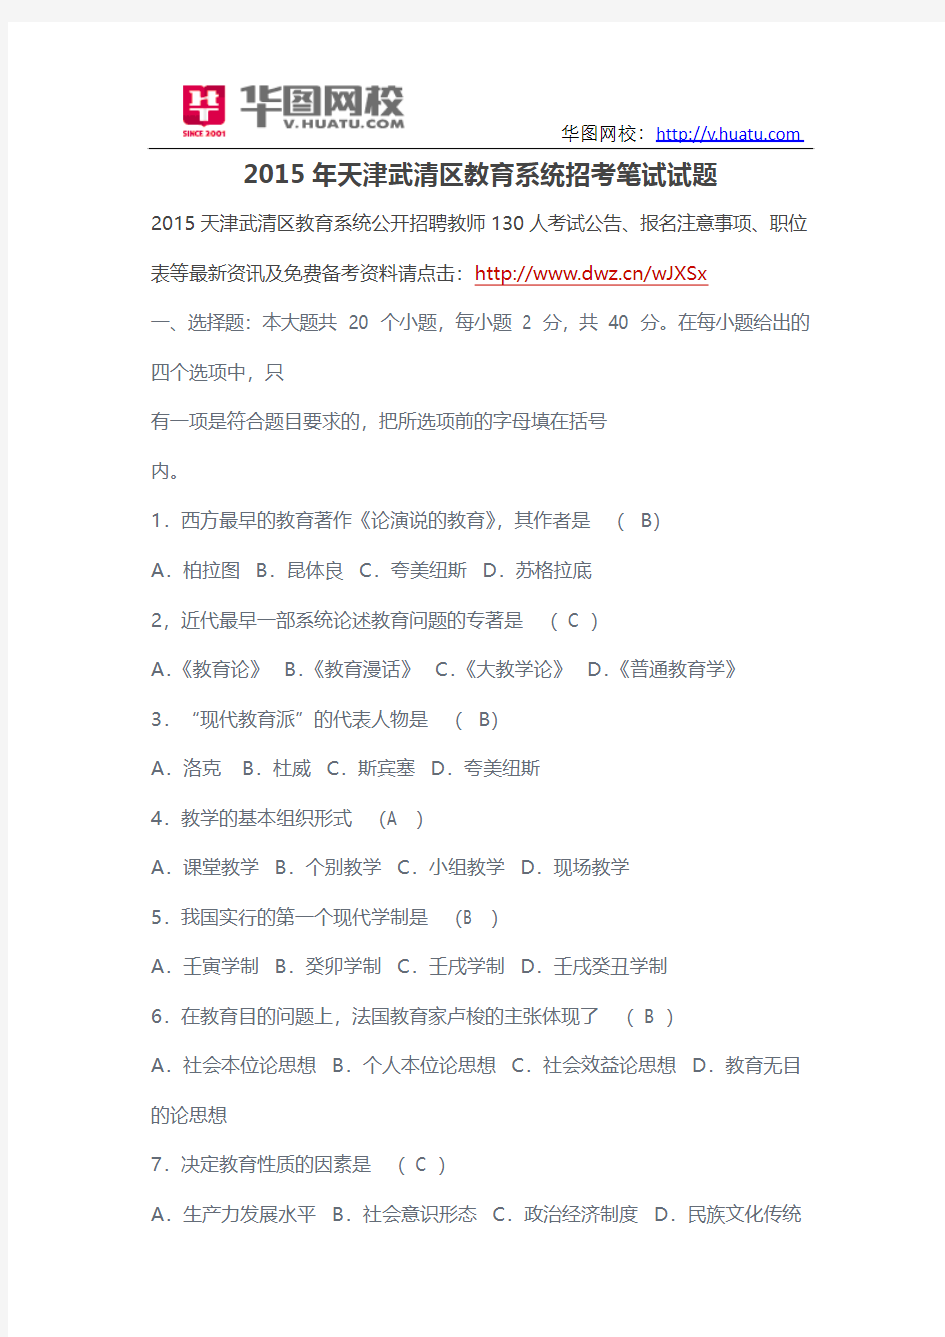 2015年天津武清区教育系统招考笔试试题